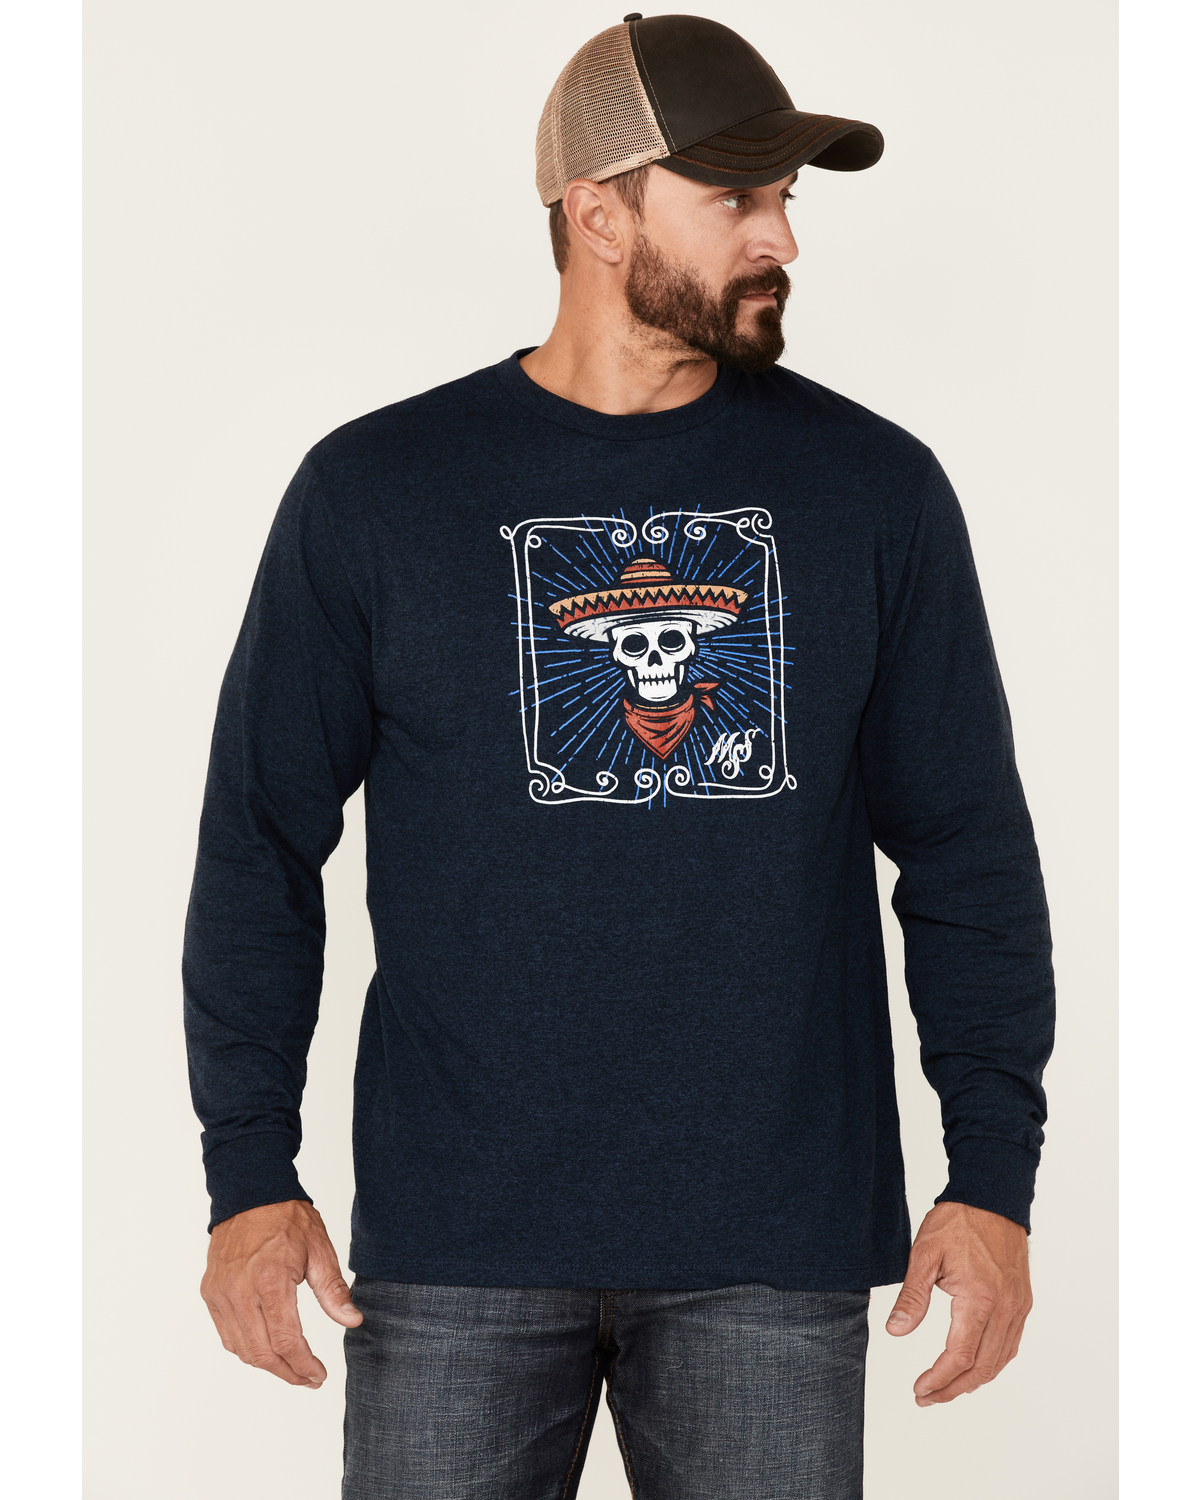 Moonshine Spirit Men's Heather Navy Framed Skull Graphic Long Sleeve T-Shirt